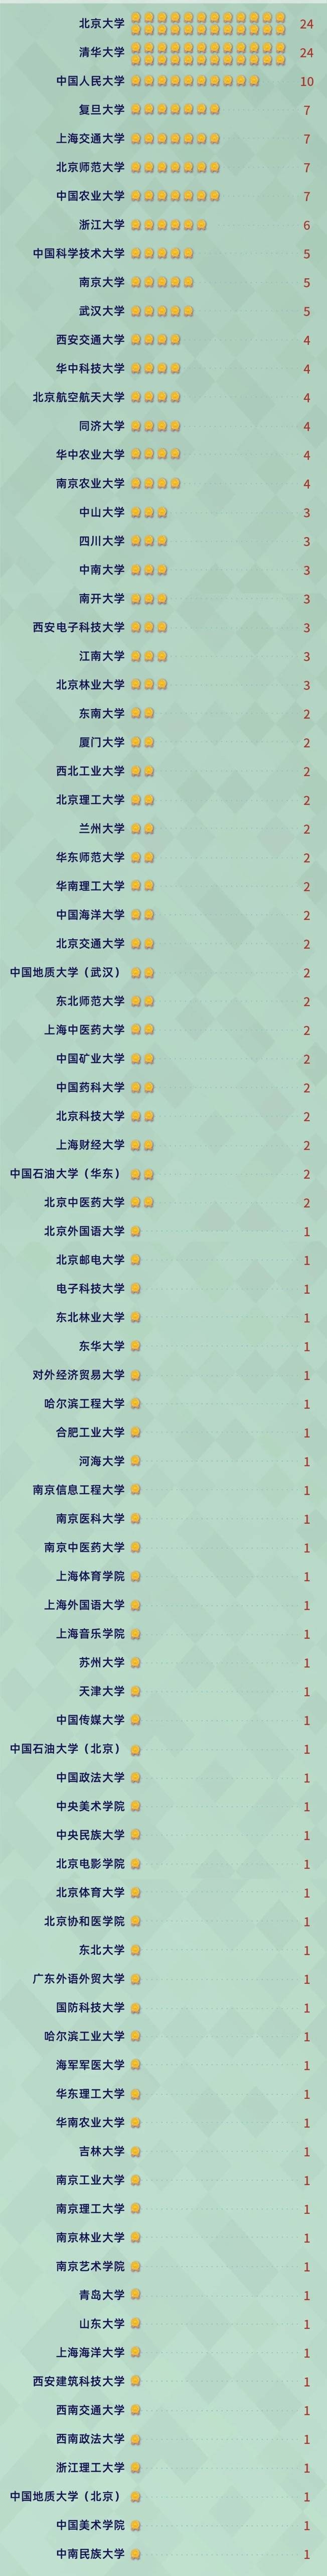 软科排名2020经济学_权威发布:2020软科中国最好学科排名